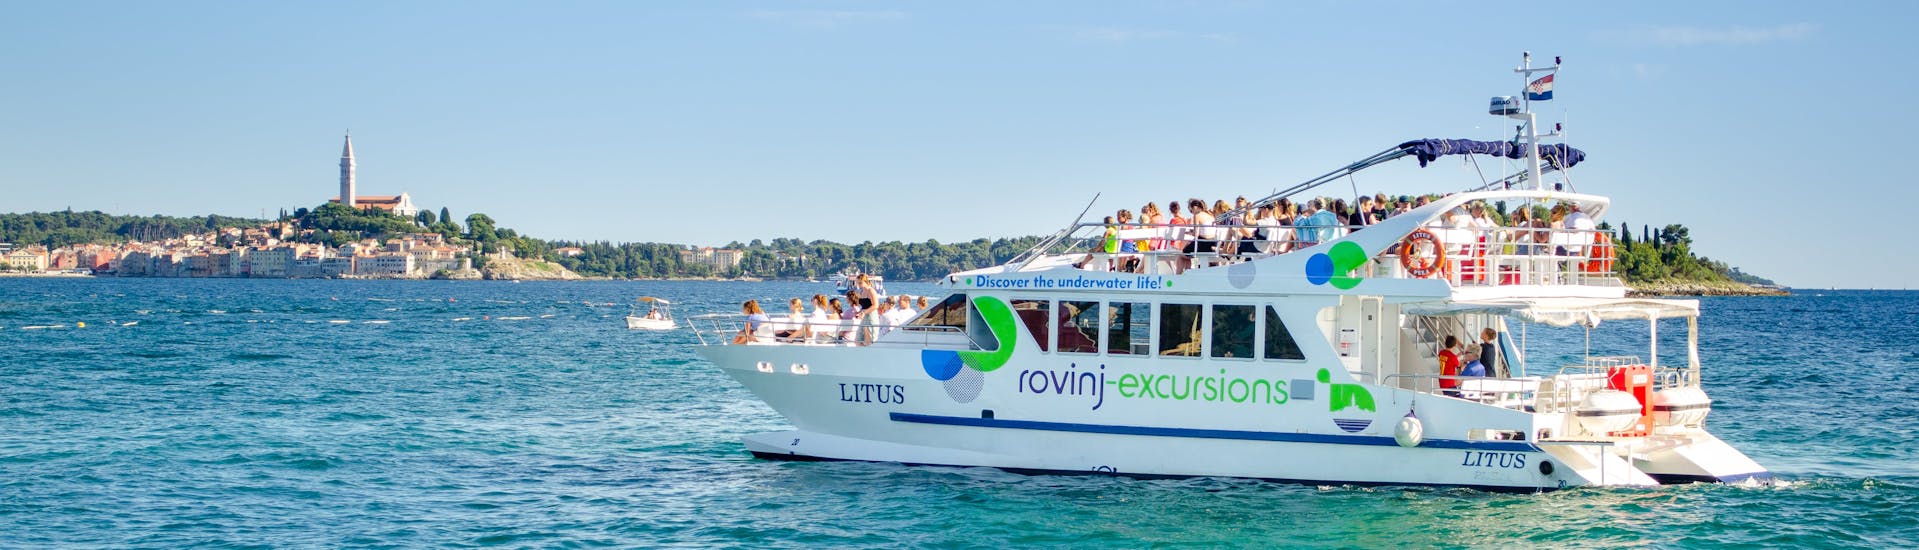 De catamaran LITUS in het kristalheldere water van Istrië tijdens de catamarantocht rond Rovinj met zwemstop met Rovinj Excursies.